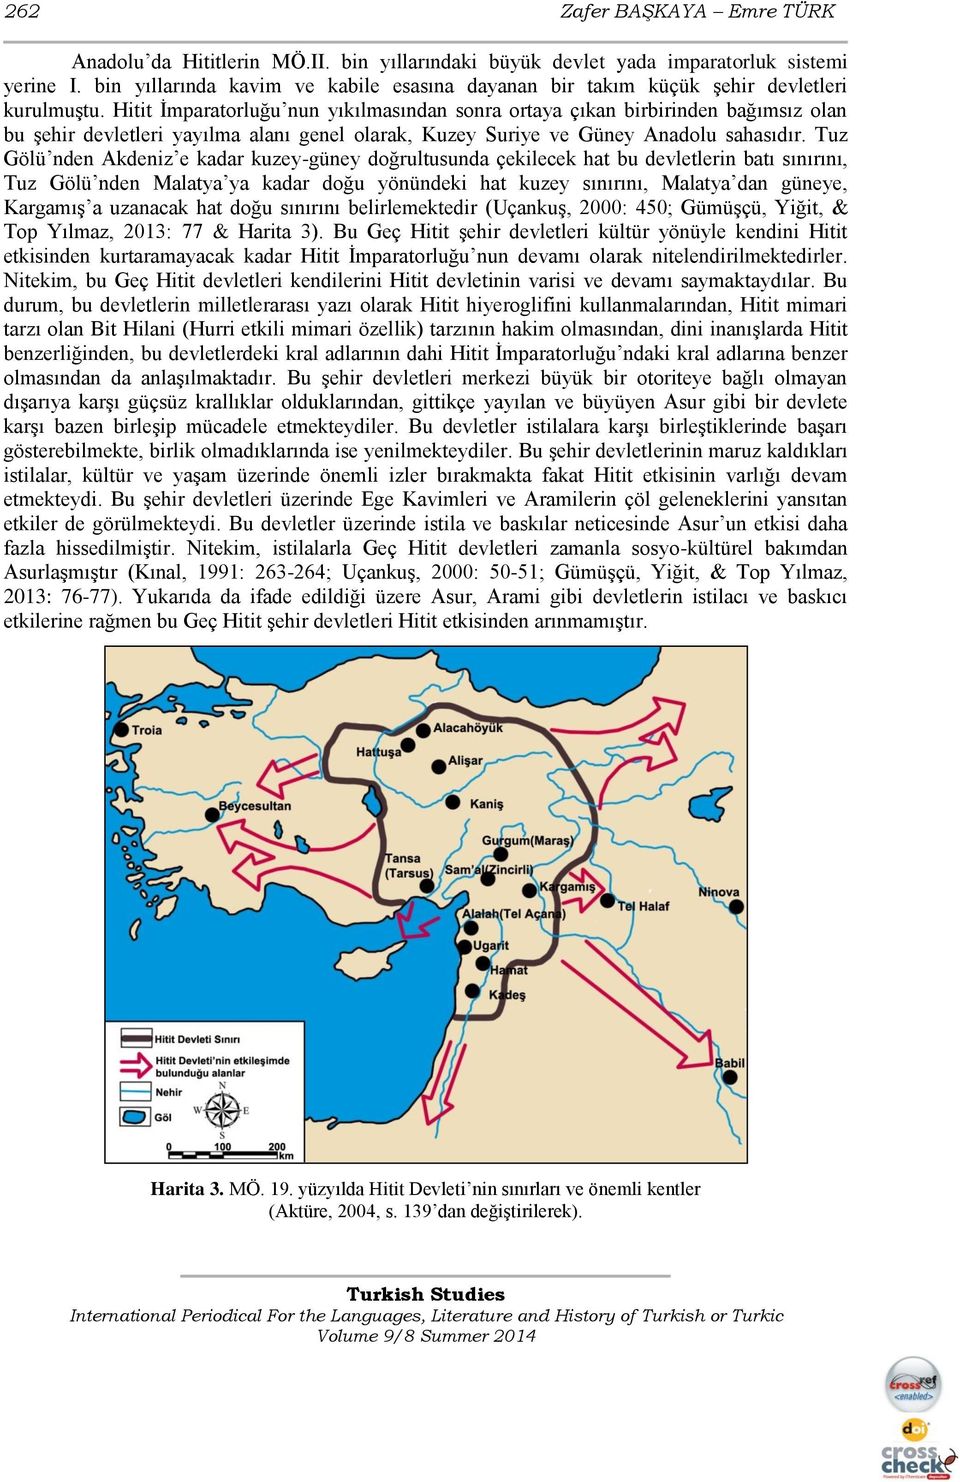 Hitit İmparatorluğu nun yıkılmasından sonra ortaya çıkan birbirinden bağımsız olan bu şehir devletleri yayılma alanı genel olarak, Kuzey Suriye ve Güney Anadolu sahasıdır.